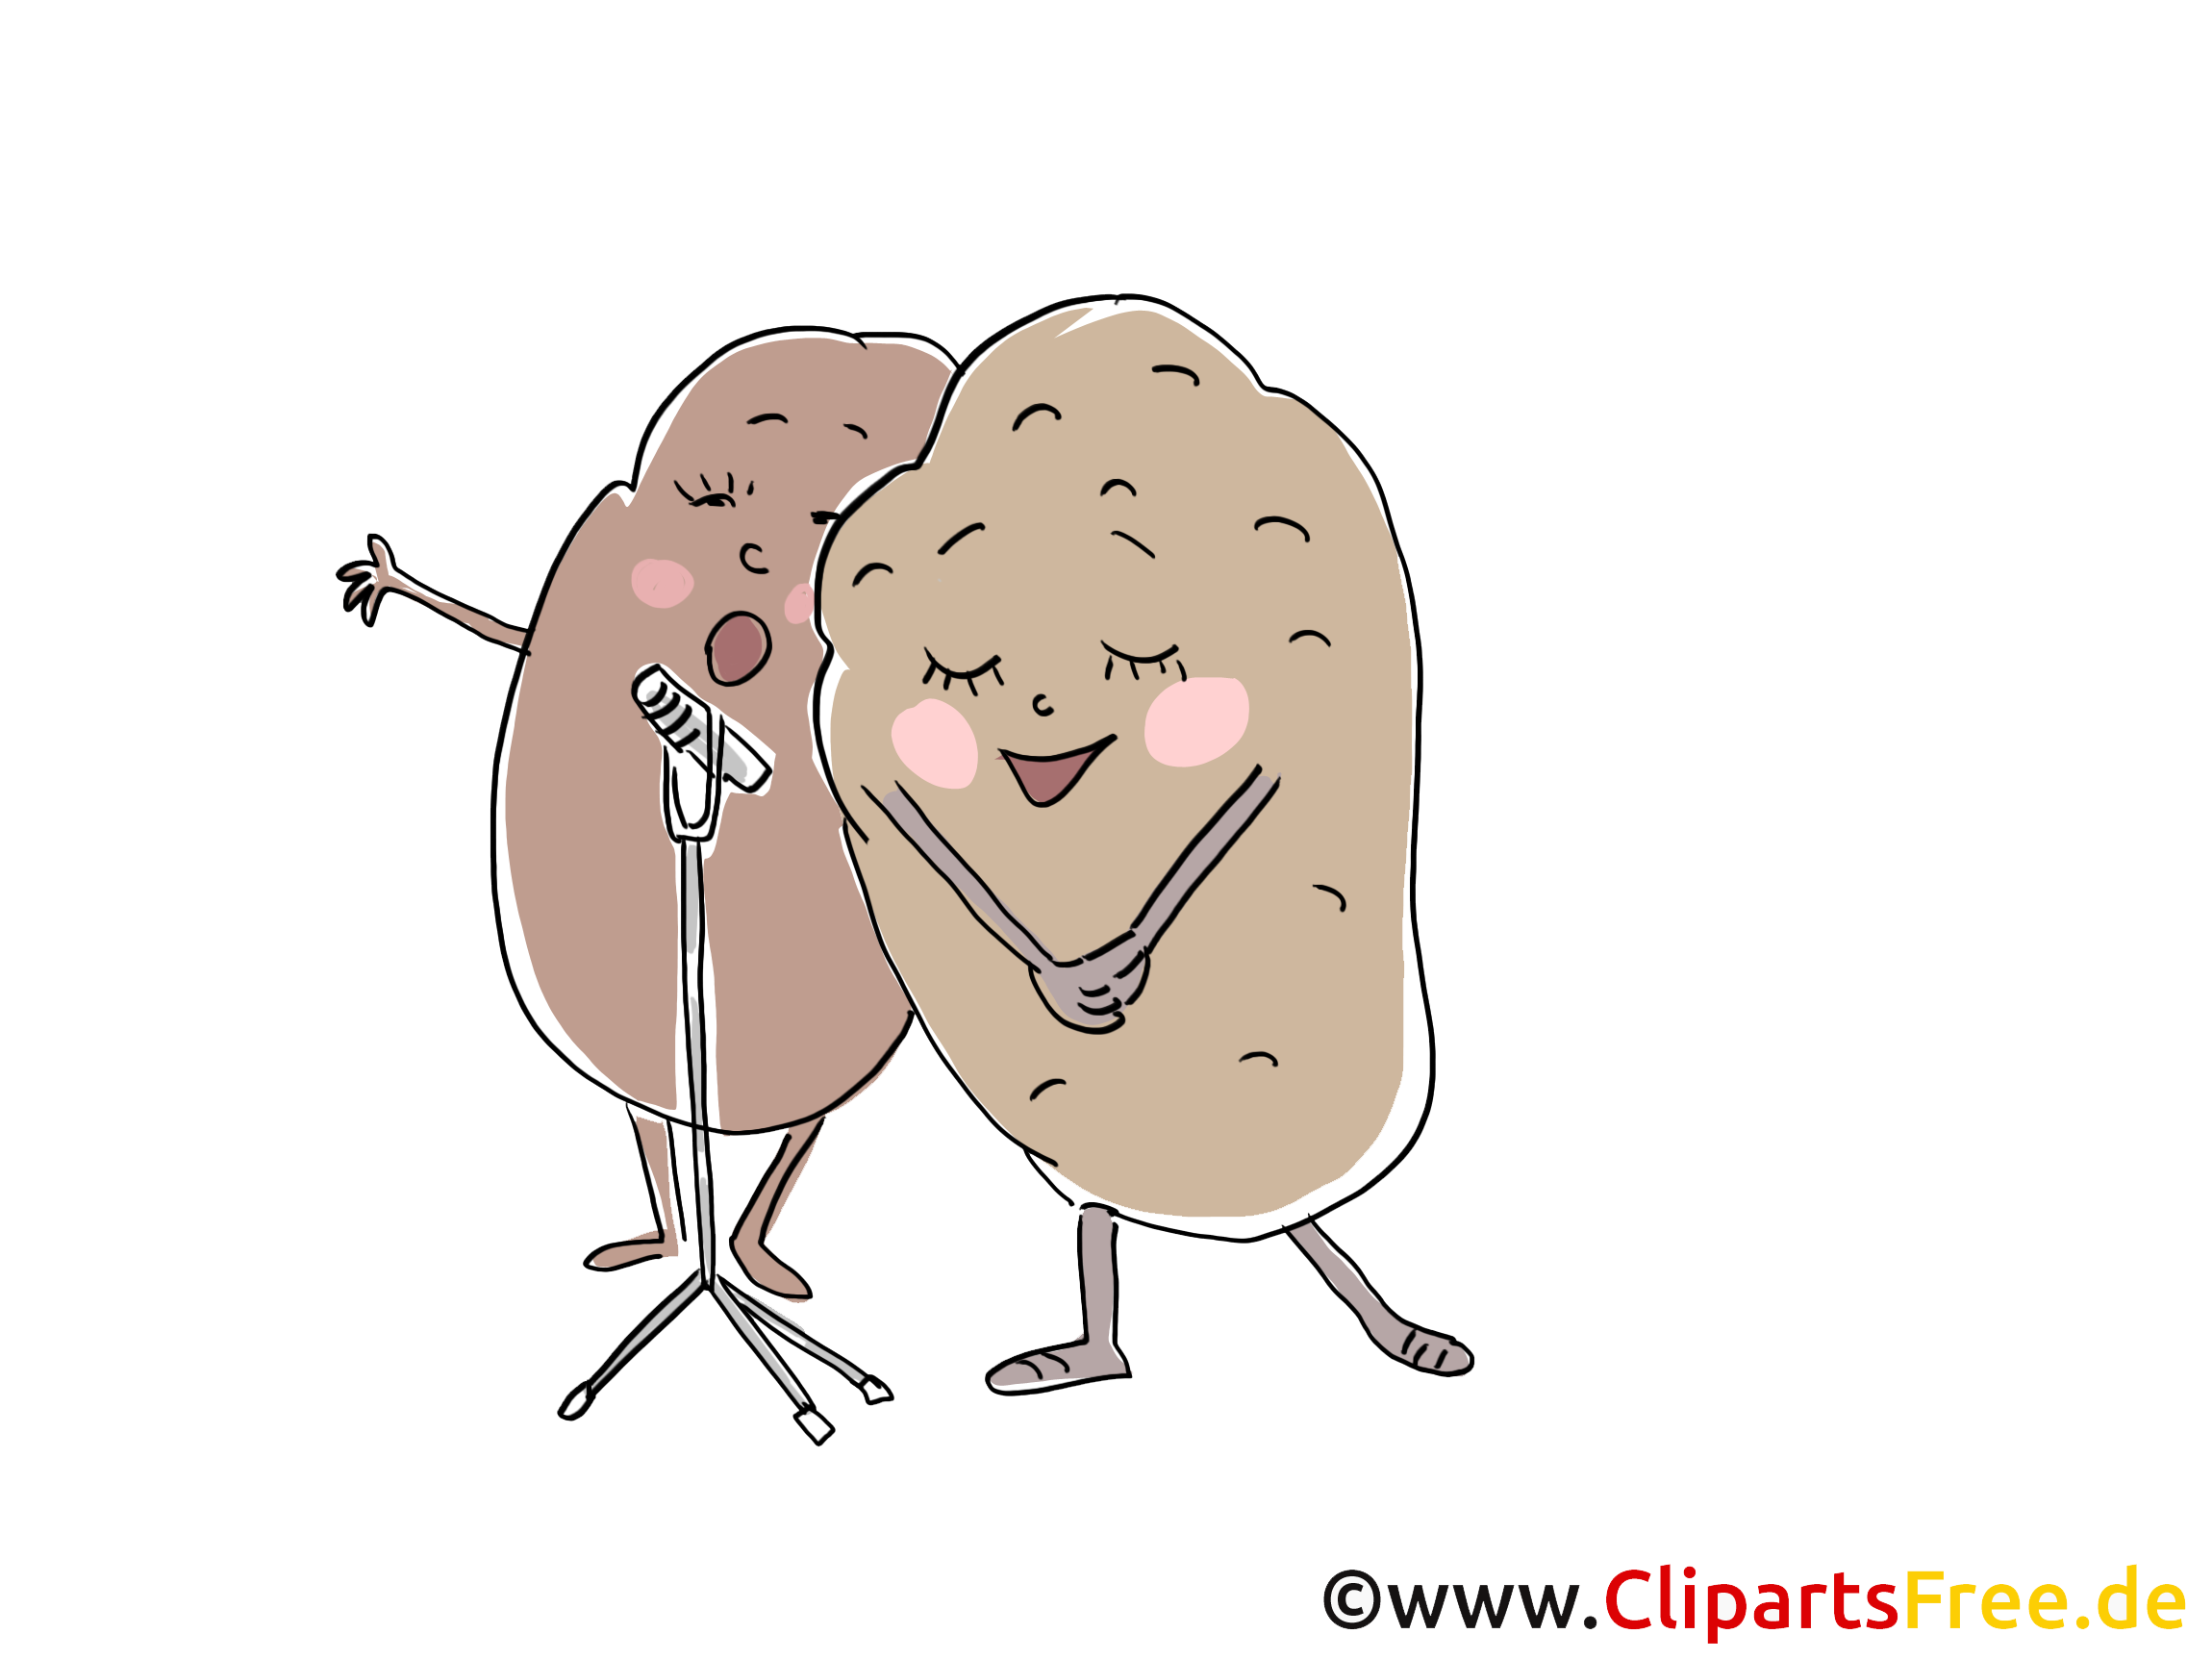 Patates clipart - Légume dessins gratuits